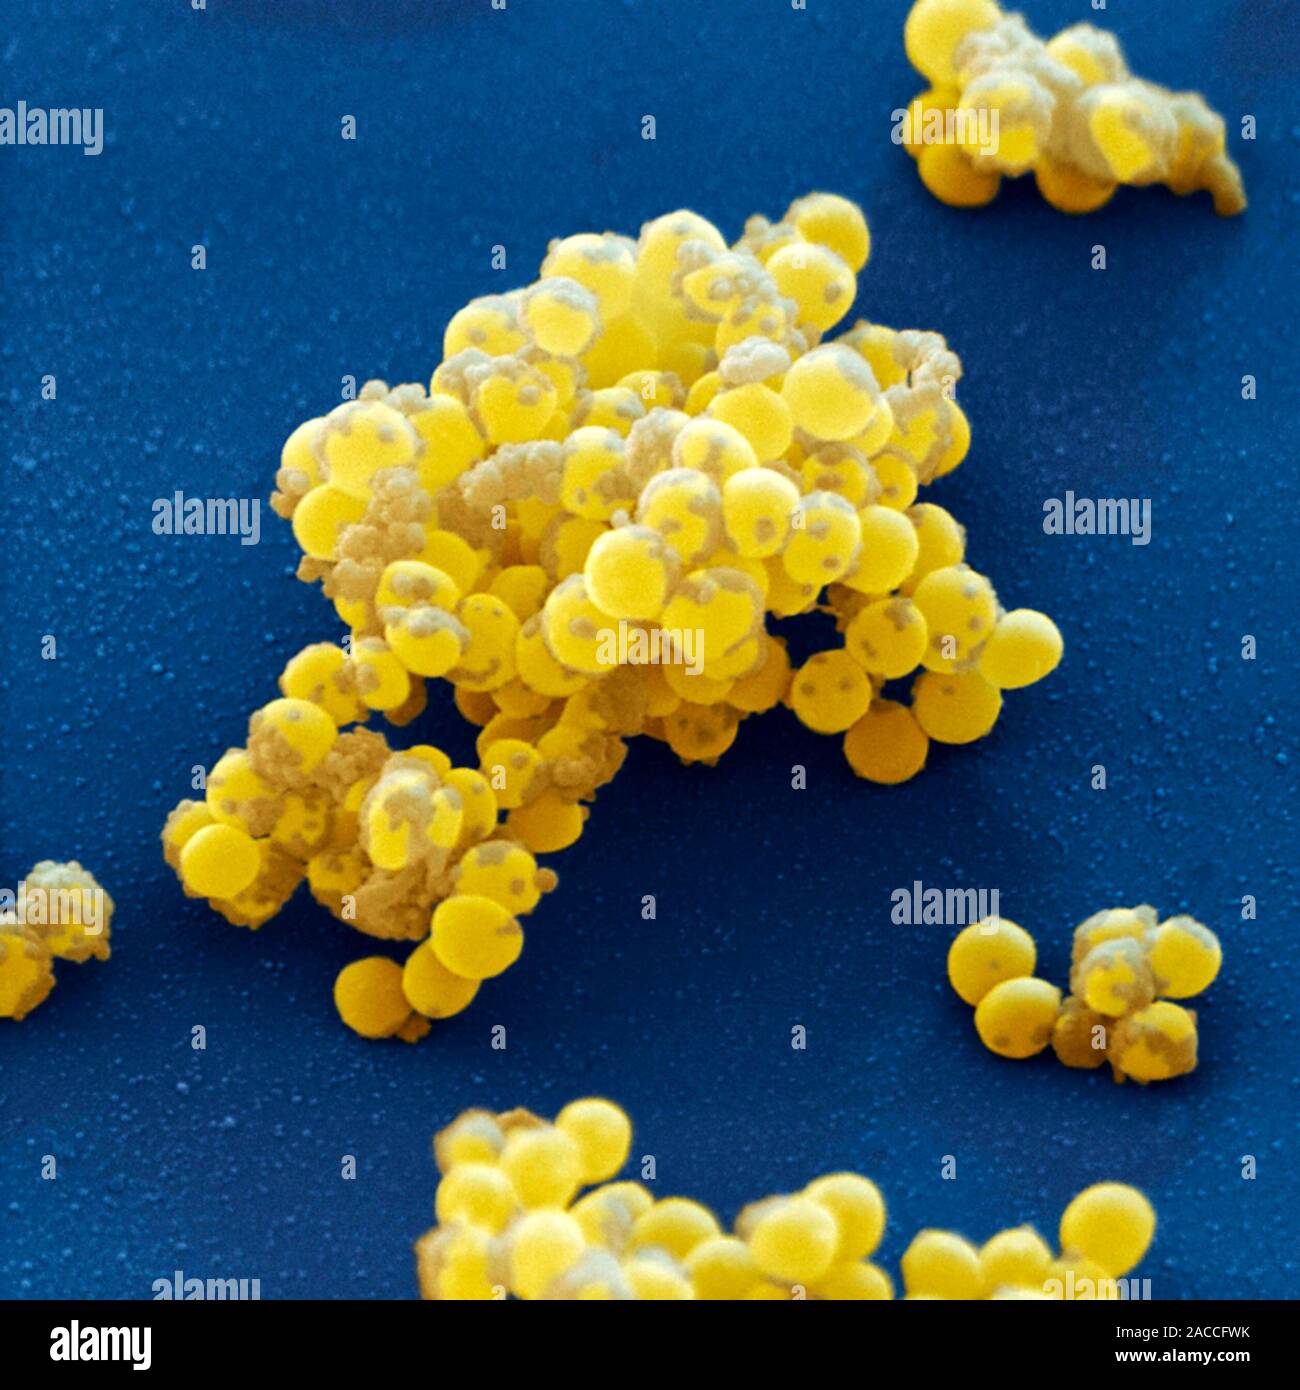 Staphylococcus aureus золотистый стафилококк. S. aureus золотистый стафилококк. Метициллин-резистентный золотистый стафилококк. Гемокультура золотистый стафилококк. Стафилококк золотистый Staphylococcus aureus.